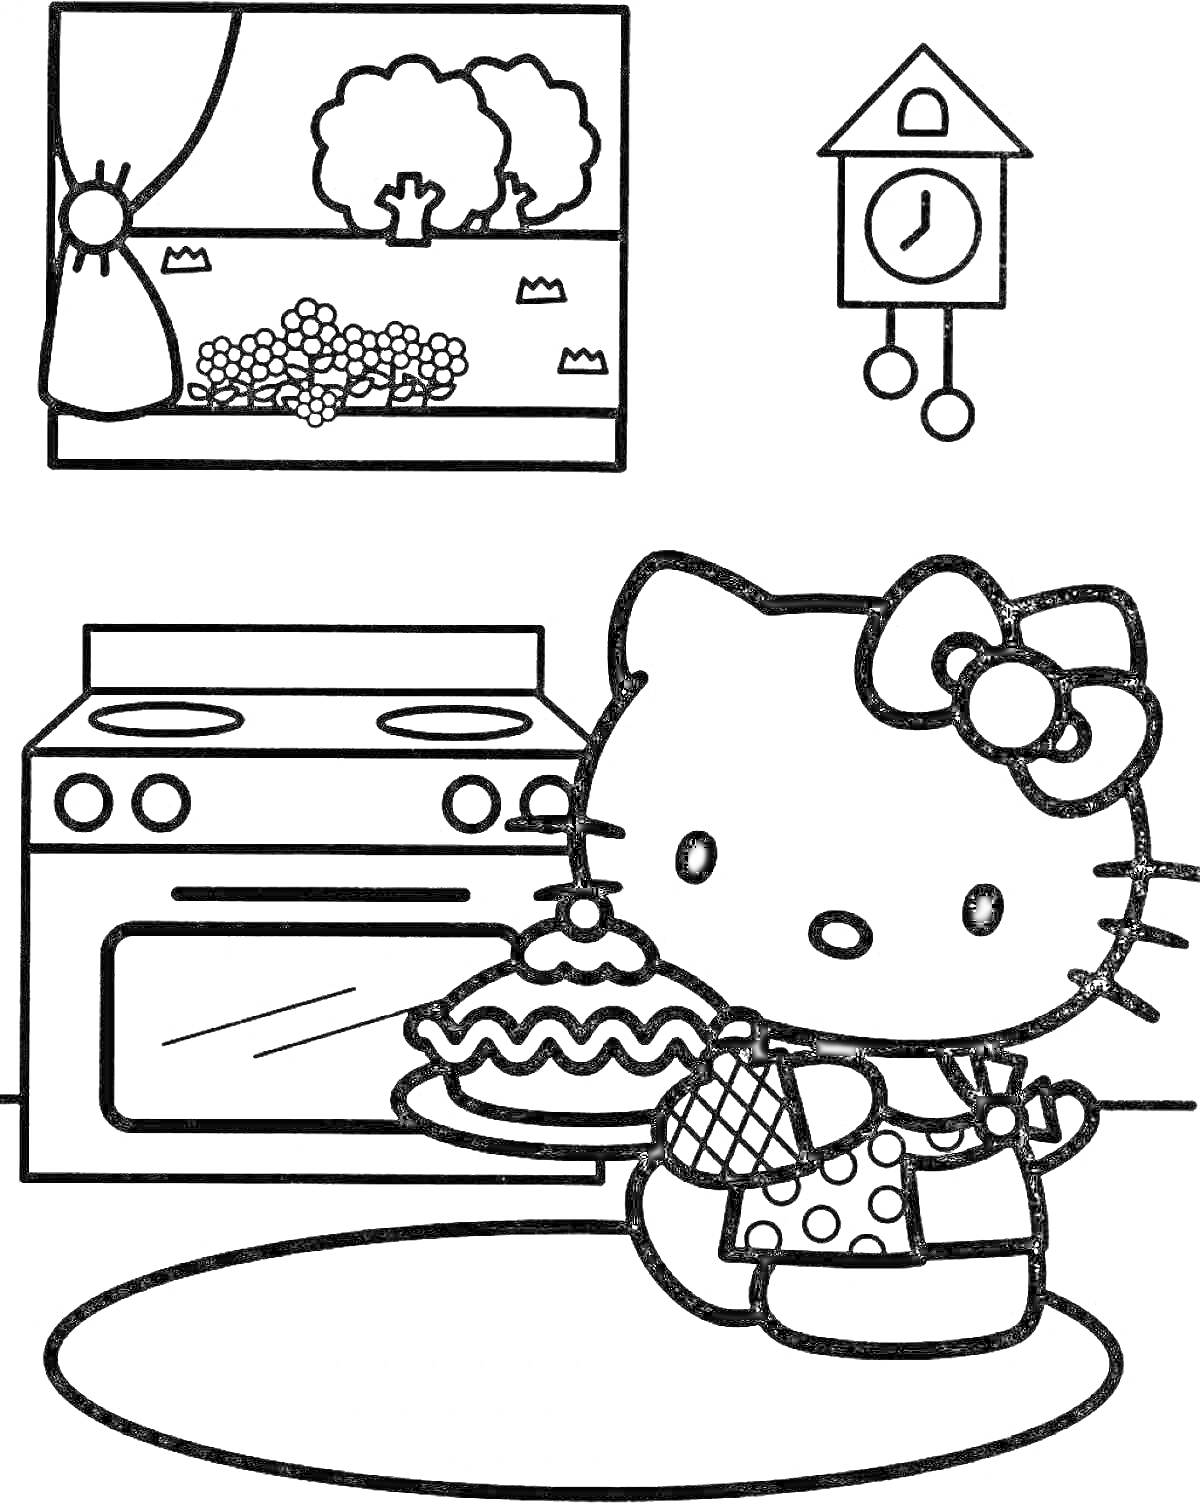 РаскраскаХелло Китти в кухне с пирогом, плита, окно с занавеской и деревьями, настенные часы в виде домика